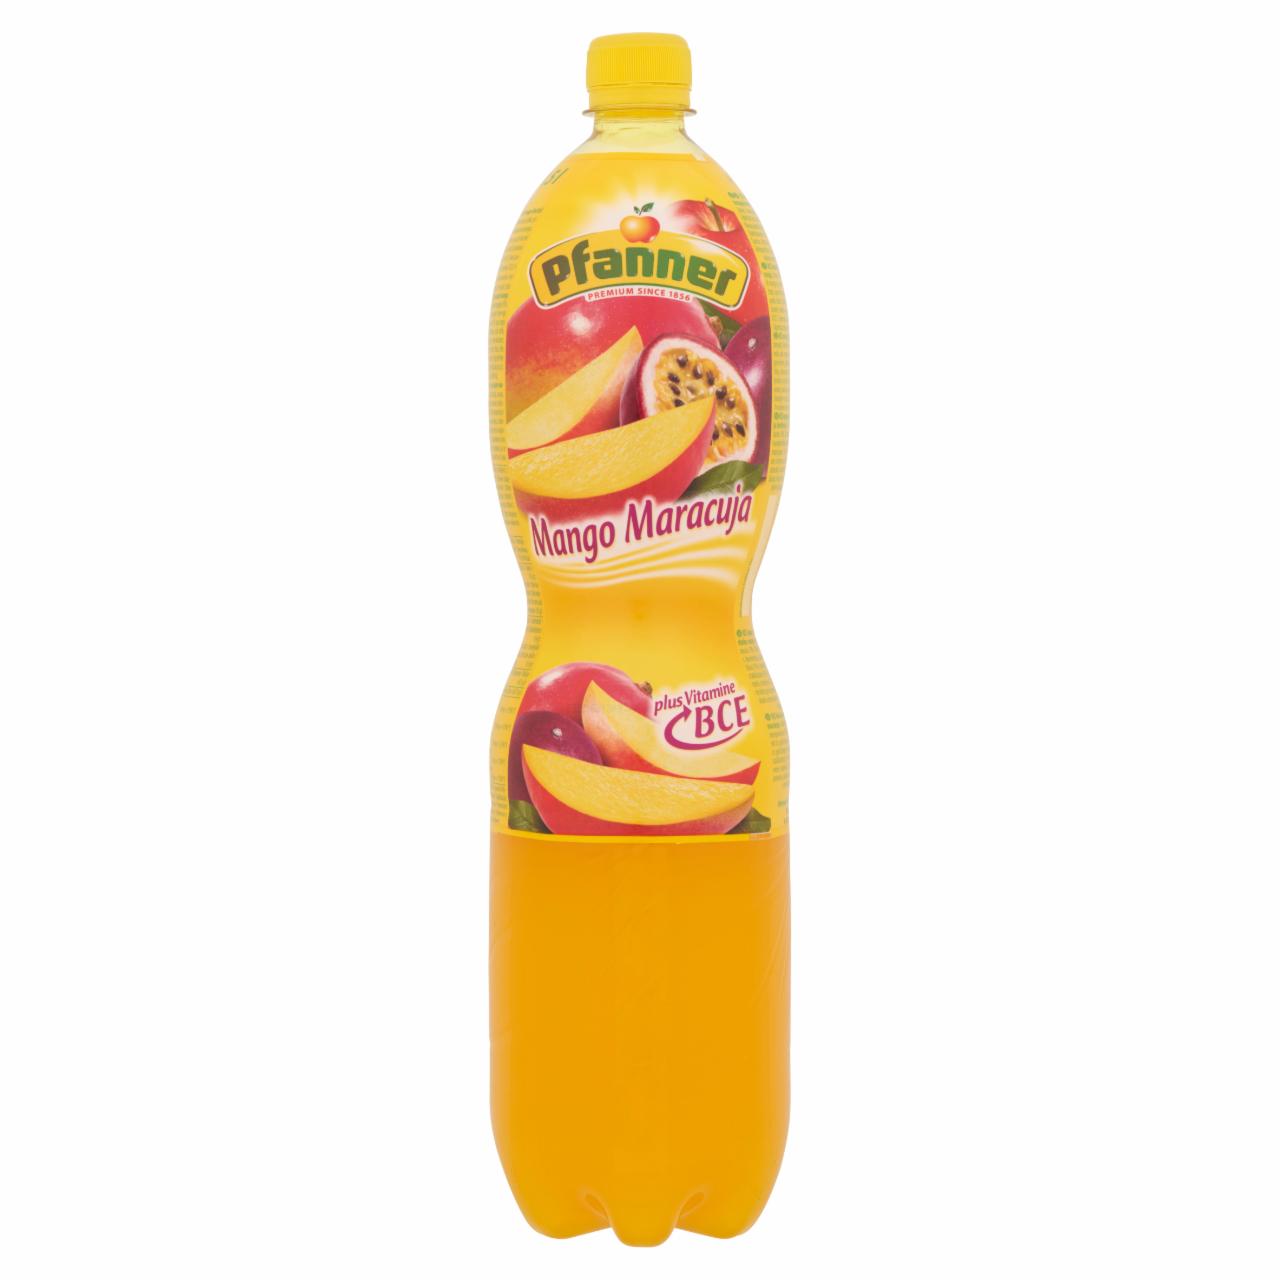 Képek - Pfanner vegyesgyümölcs üdítőital mangó-maracuja ízesítéssel, B-, C-, és E-vitaminnal 1,5 l